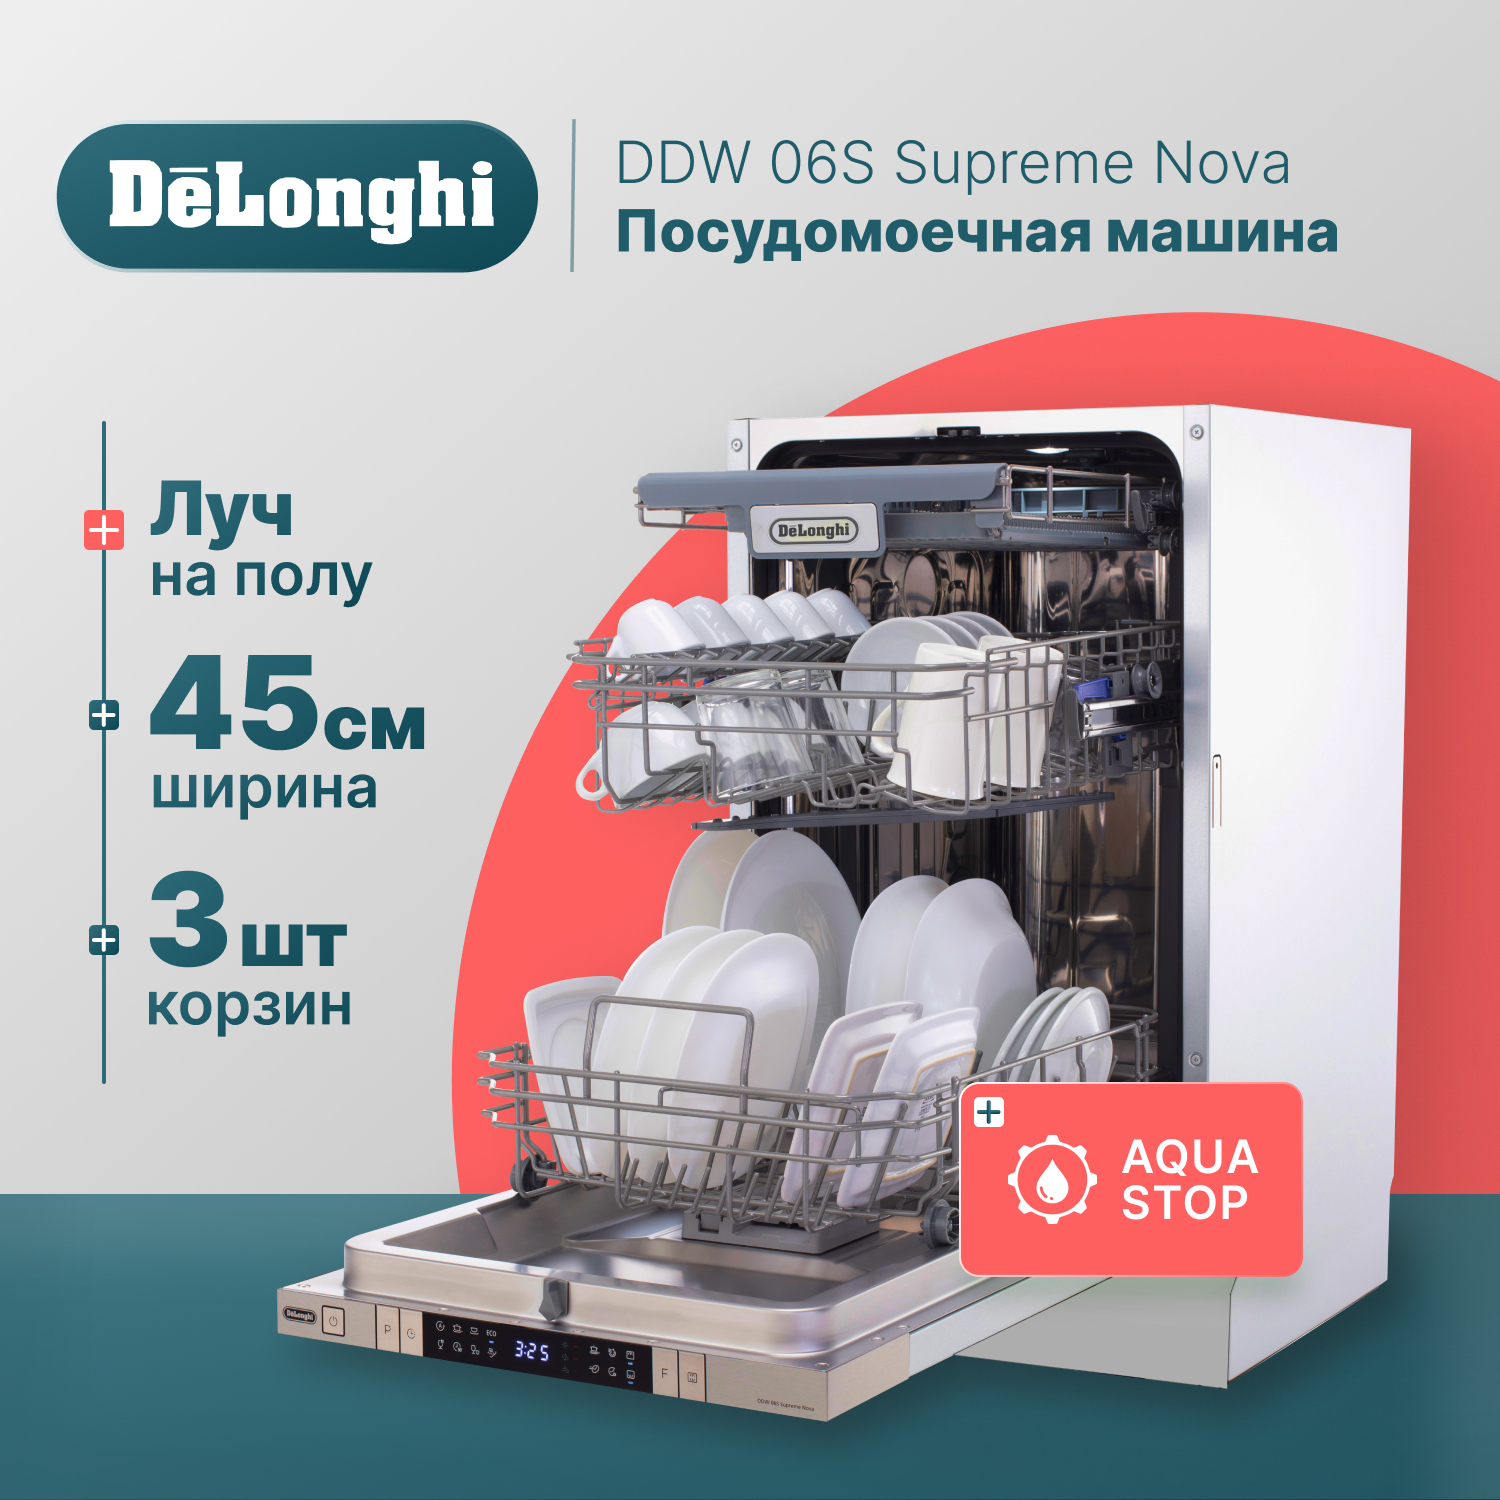 Встраиваемая посудомоечная машина Delonghi DDW06S Supreme Nova встраиваемая посудомоечная машина delonghi ddw06s supreme nova